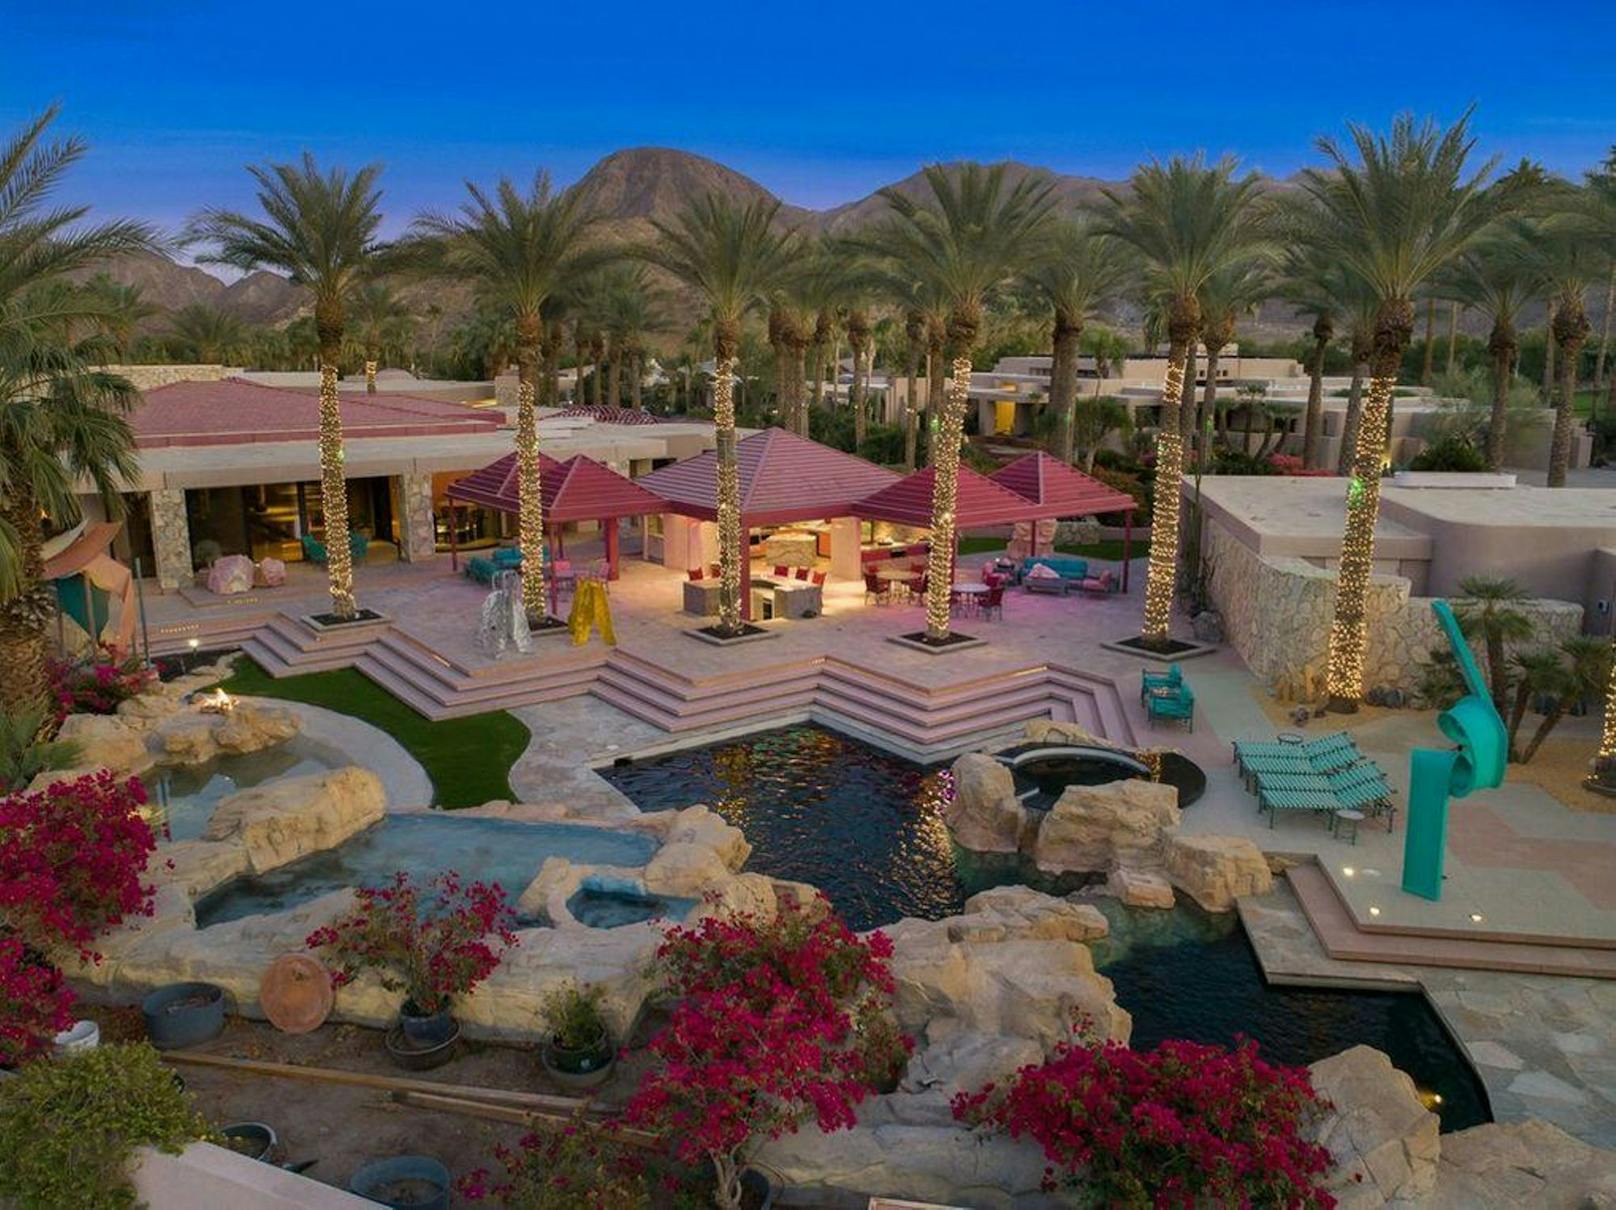 Sieben Schlafzimmer, 14 Badezimmer und eine ganze Pool-Landschaft in Pink kosten hier 5,99 Millionen Dollar.<br>